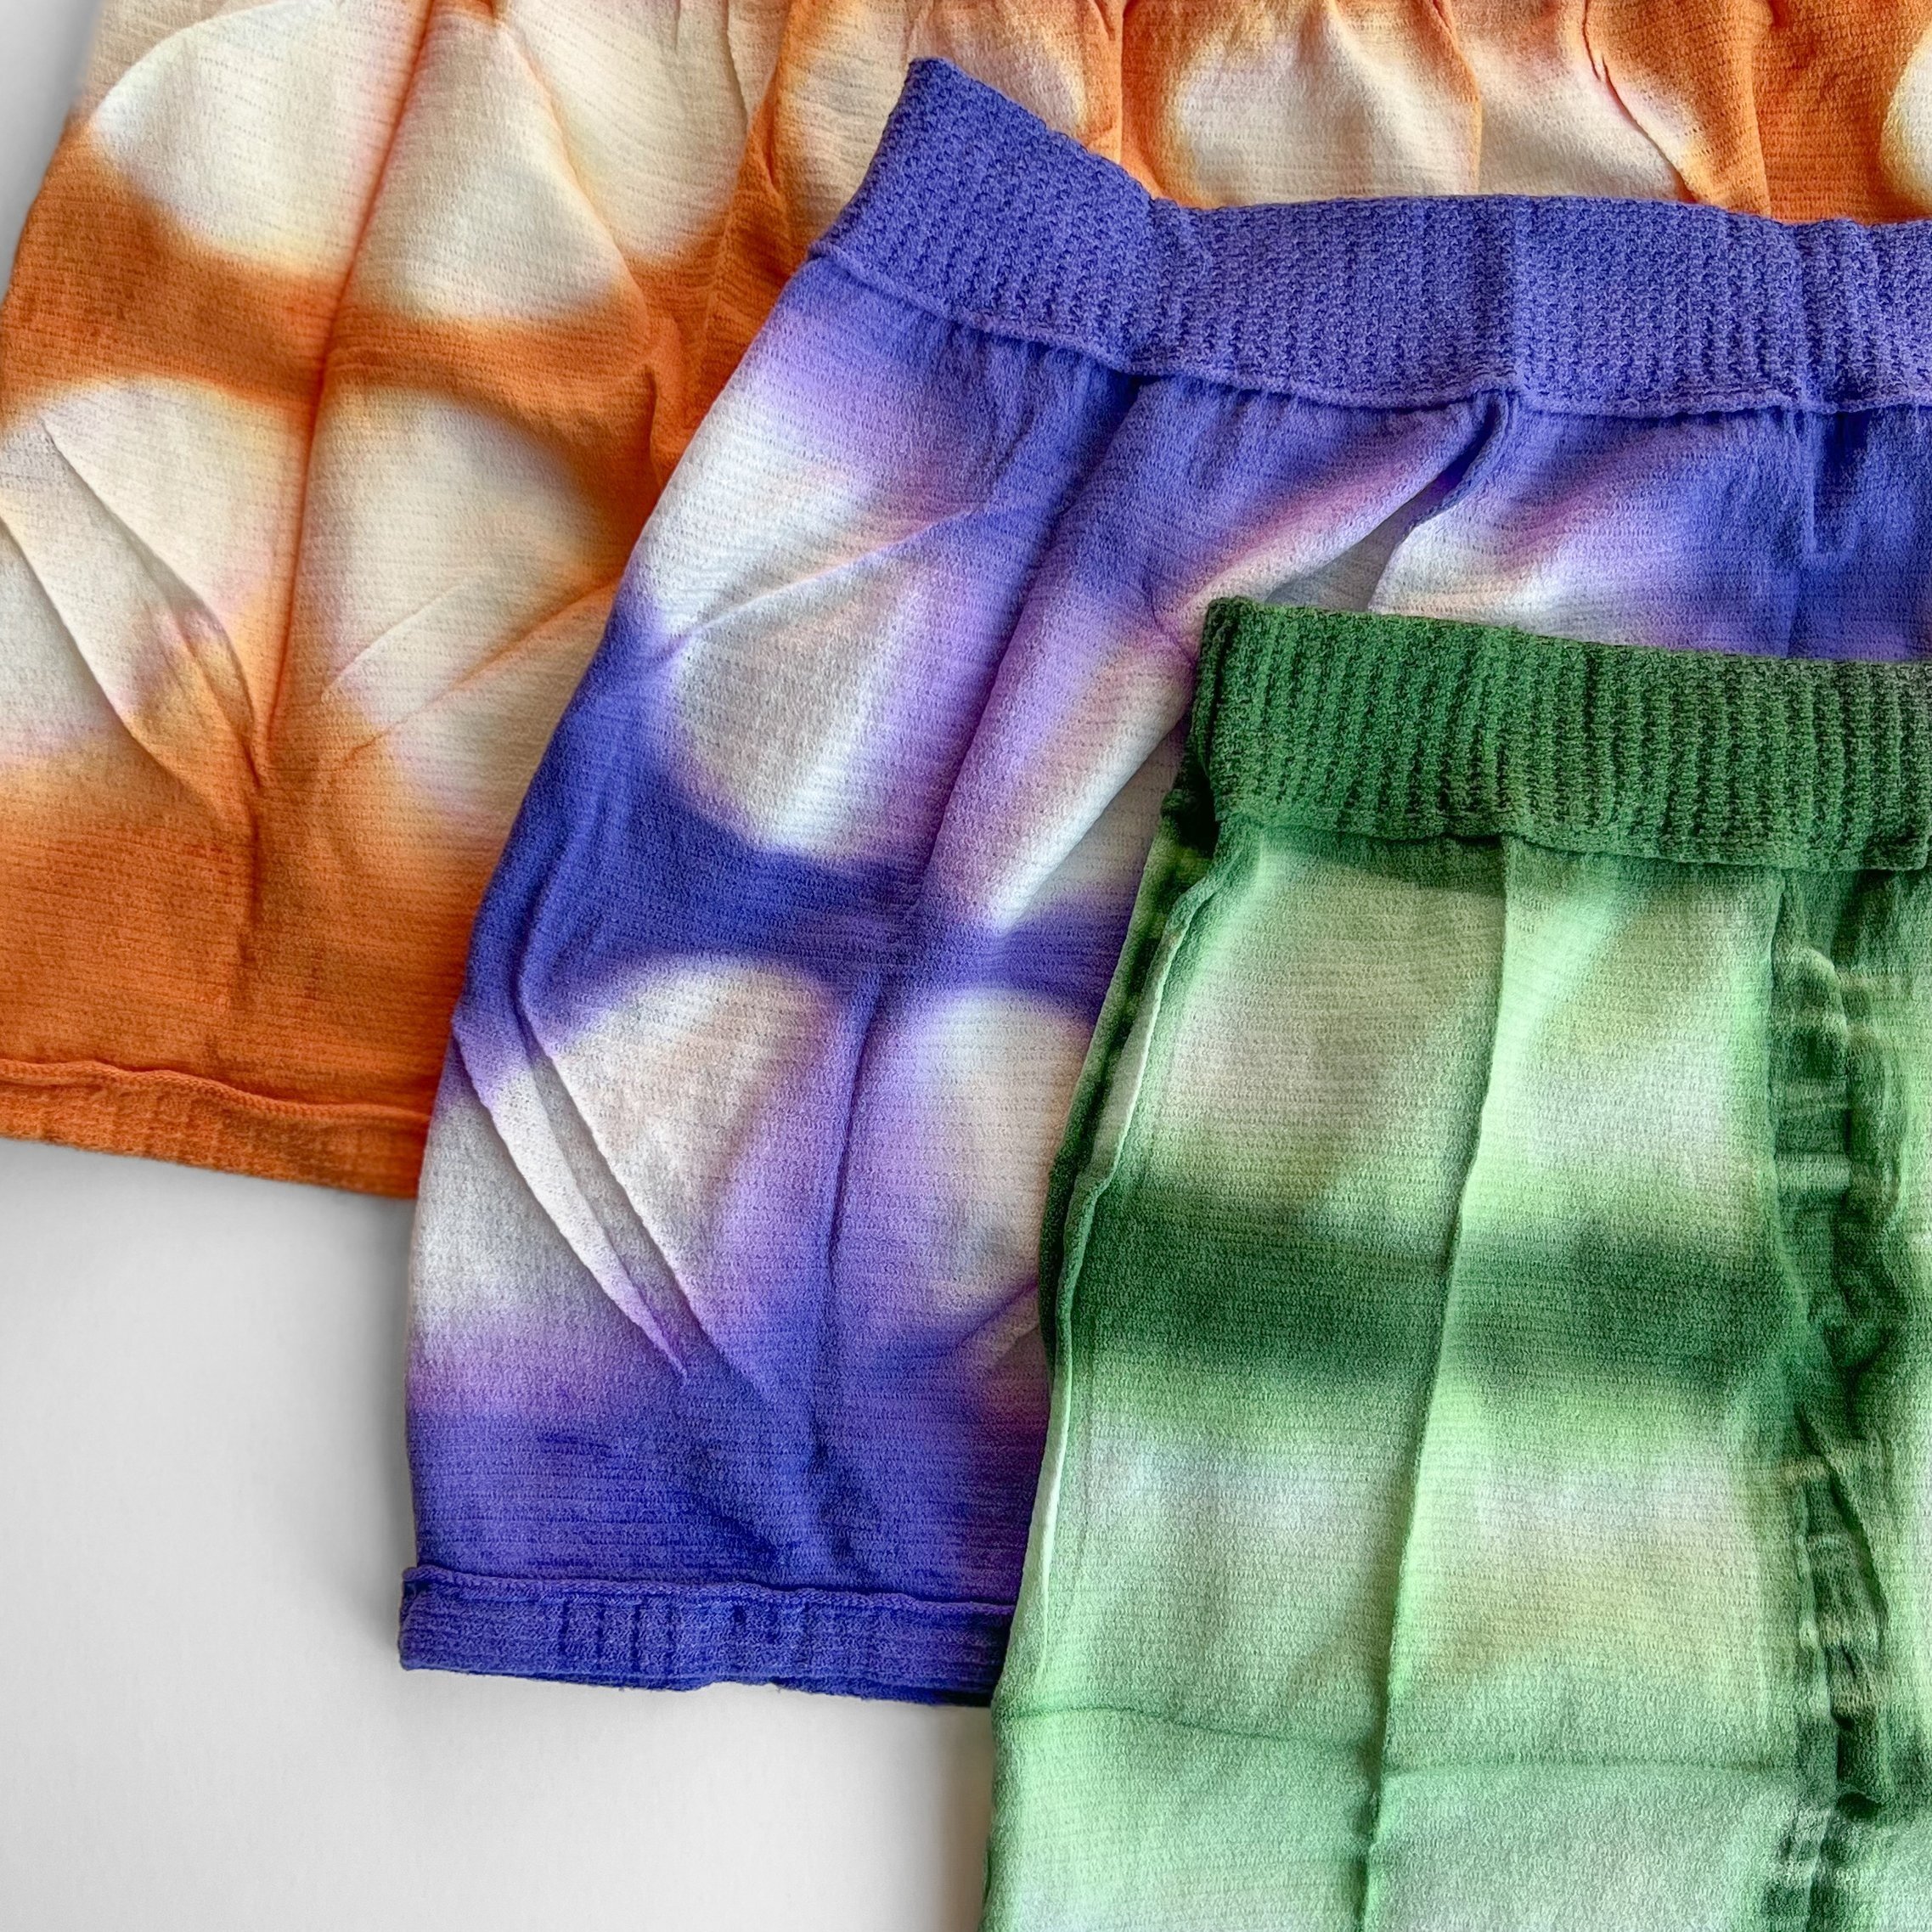 Postpartum Mesh Underwear – Round